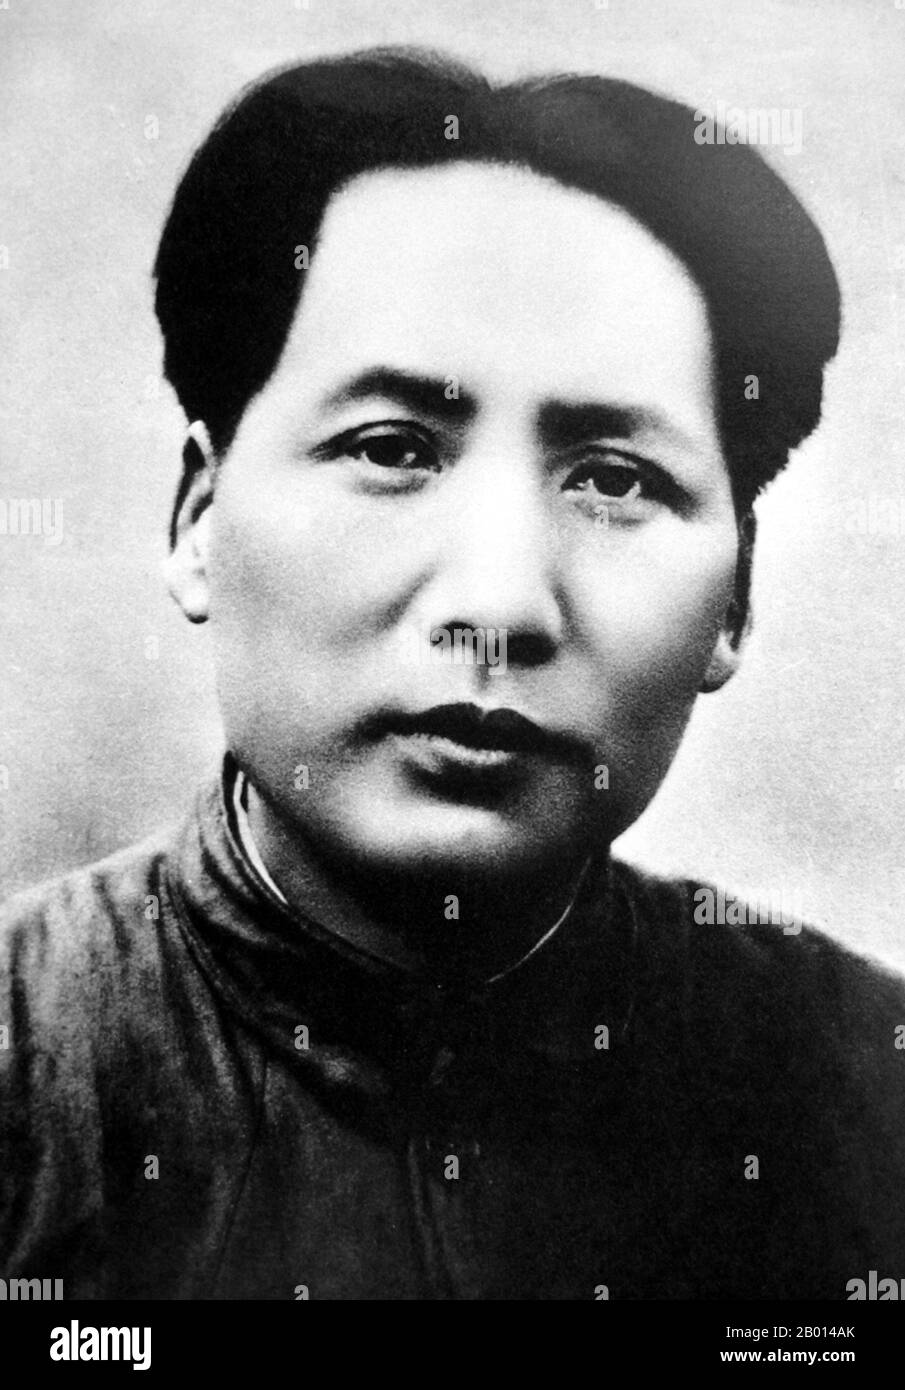 Cina: MAO Zedong (26 dicembre 1893 – 9 settembre 1976), presidente della Repubblica popolare cinese, c.. 1937. MAO Zedong, anch'esso traslitterato come Mao TSE-tung, fu un rivoluzionario comunista cinese, stratega della guerriglia, autore, teorico politico, e leader della Rivoluzione cinese. Comunemente indicato come presidente Mao, è stato l'architetto della Repubblica popolare Cinese (PRC) dalla sua fondazione nel 1949, e ha mantenuto il controllo autoritario sulla nazione fino alla sua morte nel 1976. Il suo contributo teorico al marxismo-leninismo fu collettivamente noto come Maoismo. Foto Stock